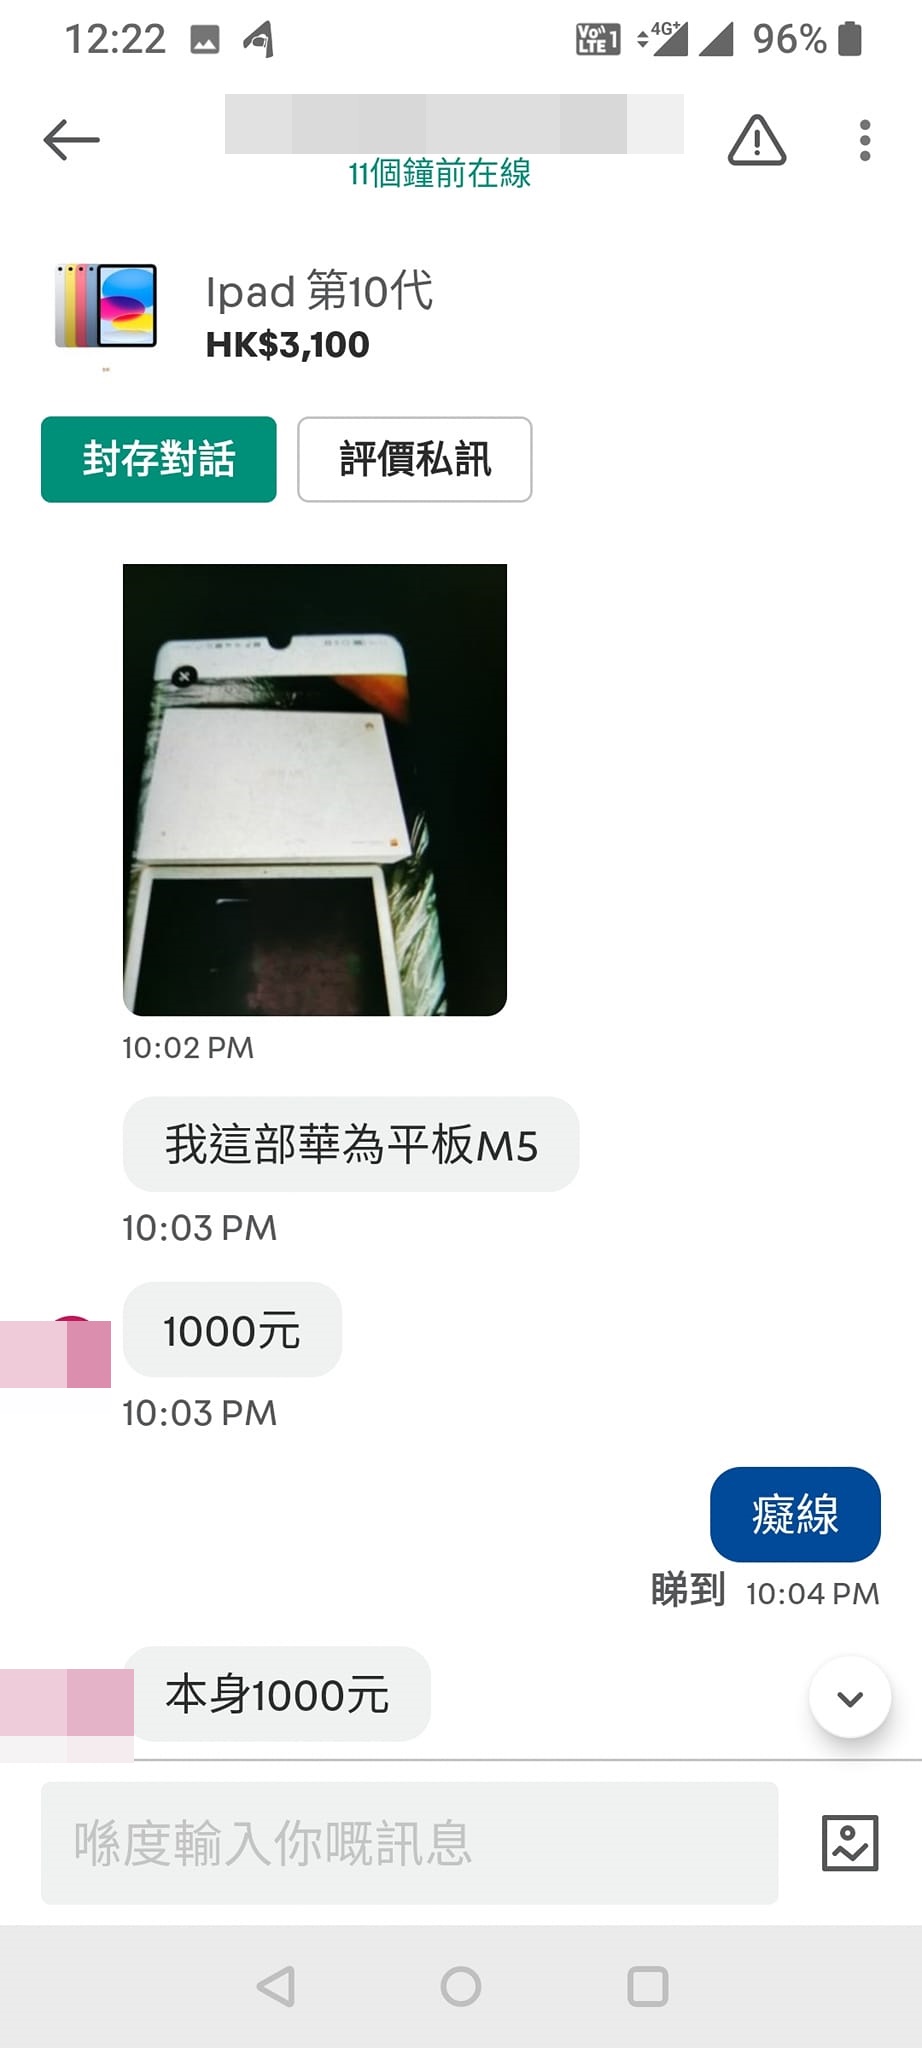 对方上传另一品牌的平板电脑照片，并指其原本售价为1000元。「Carousell 乞衣+X客关注组」FB